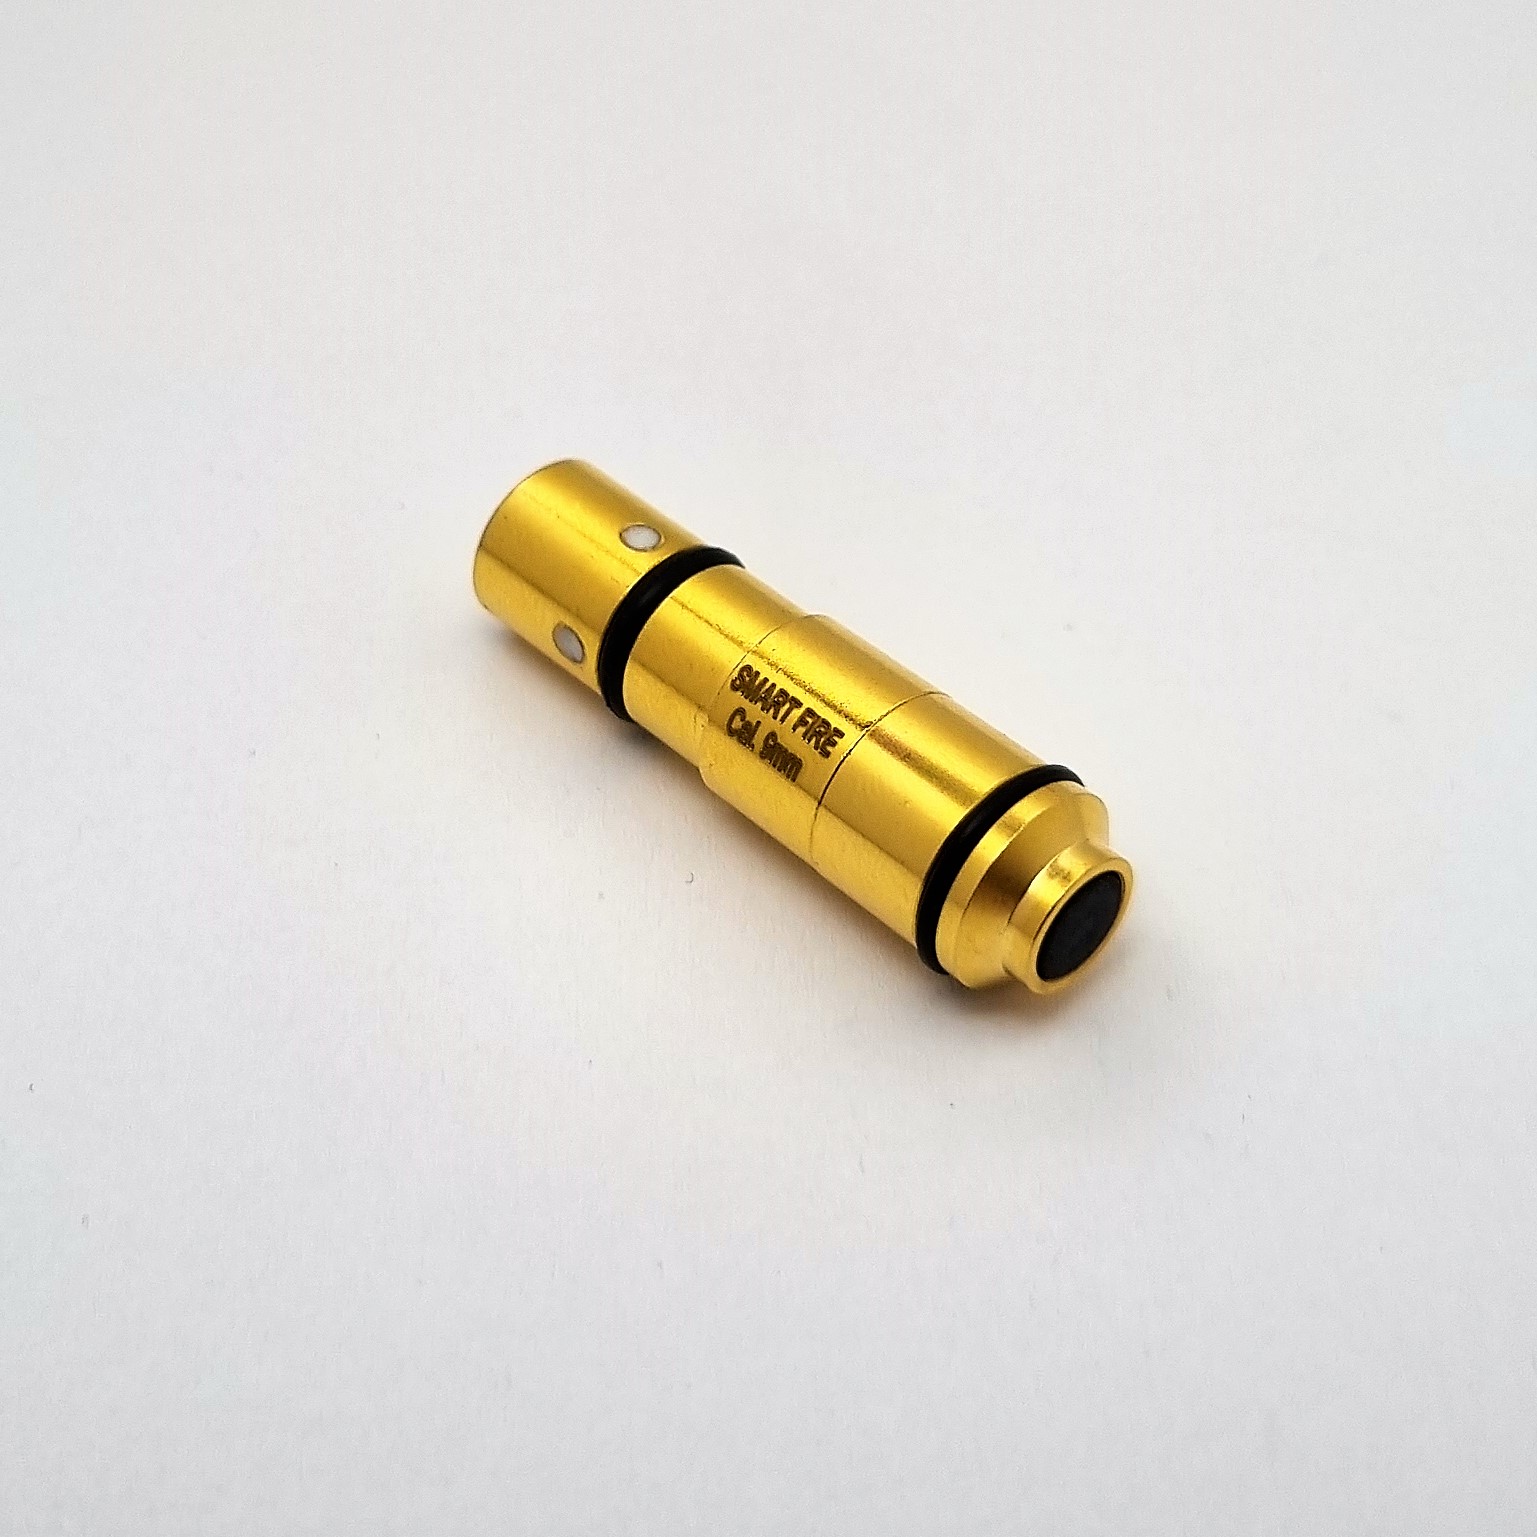 Treningowy nabój laserowy kaliber 9mm